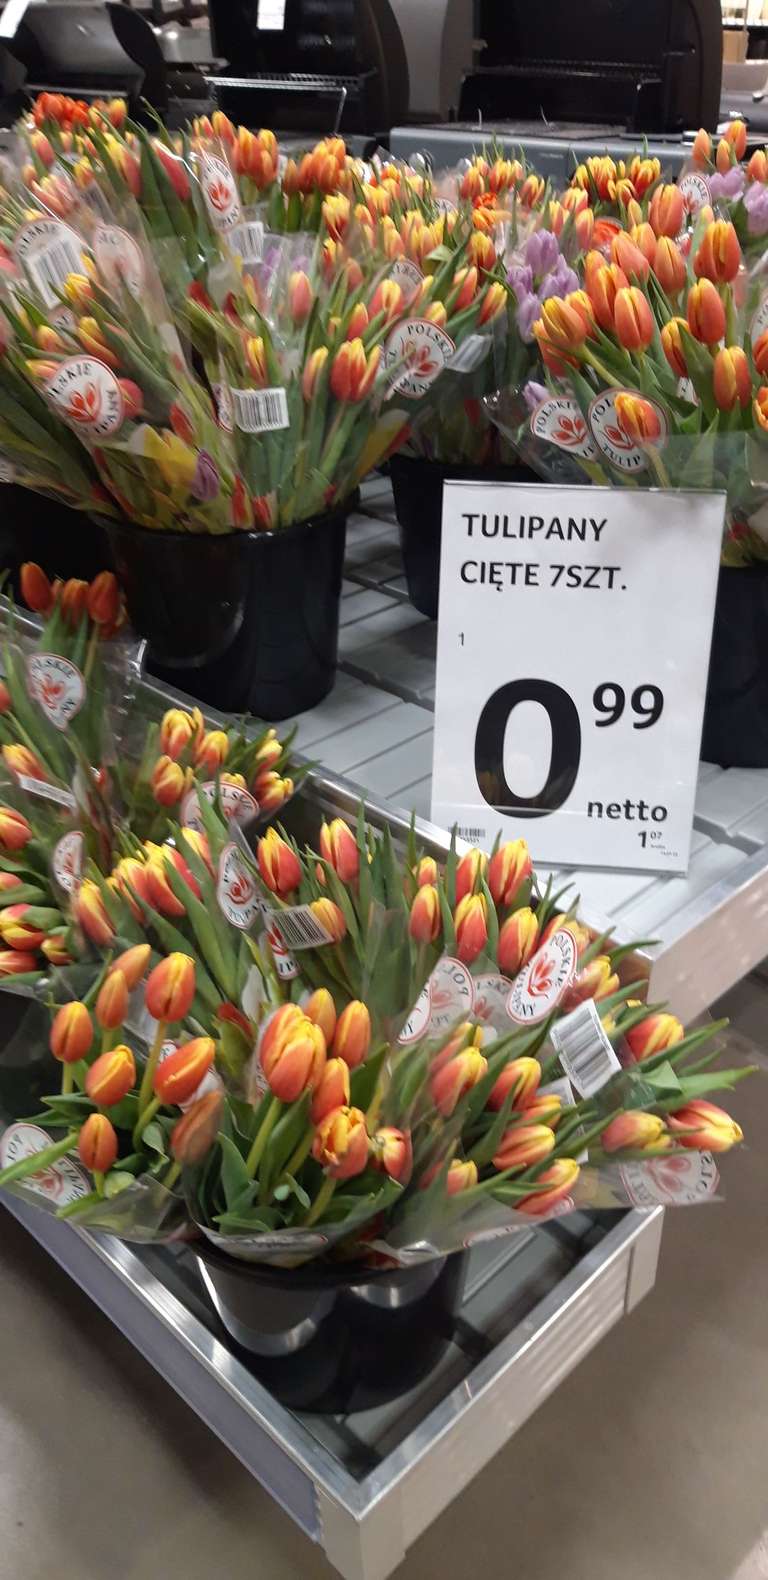 Tulipany bukiet 7szt. w Selgros Białystok